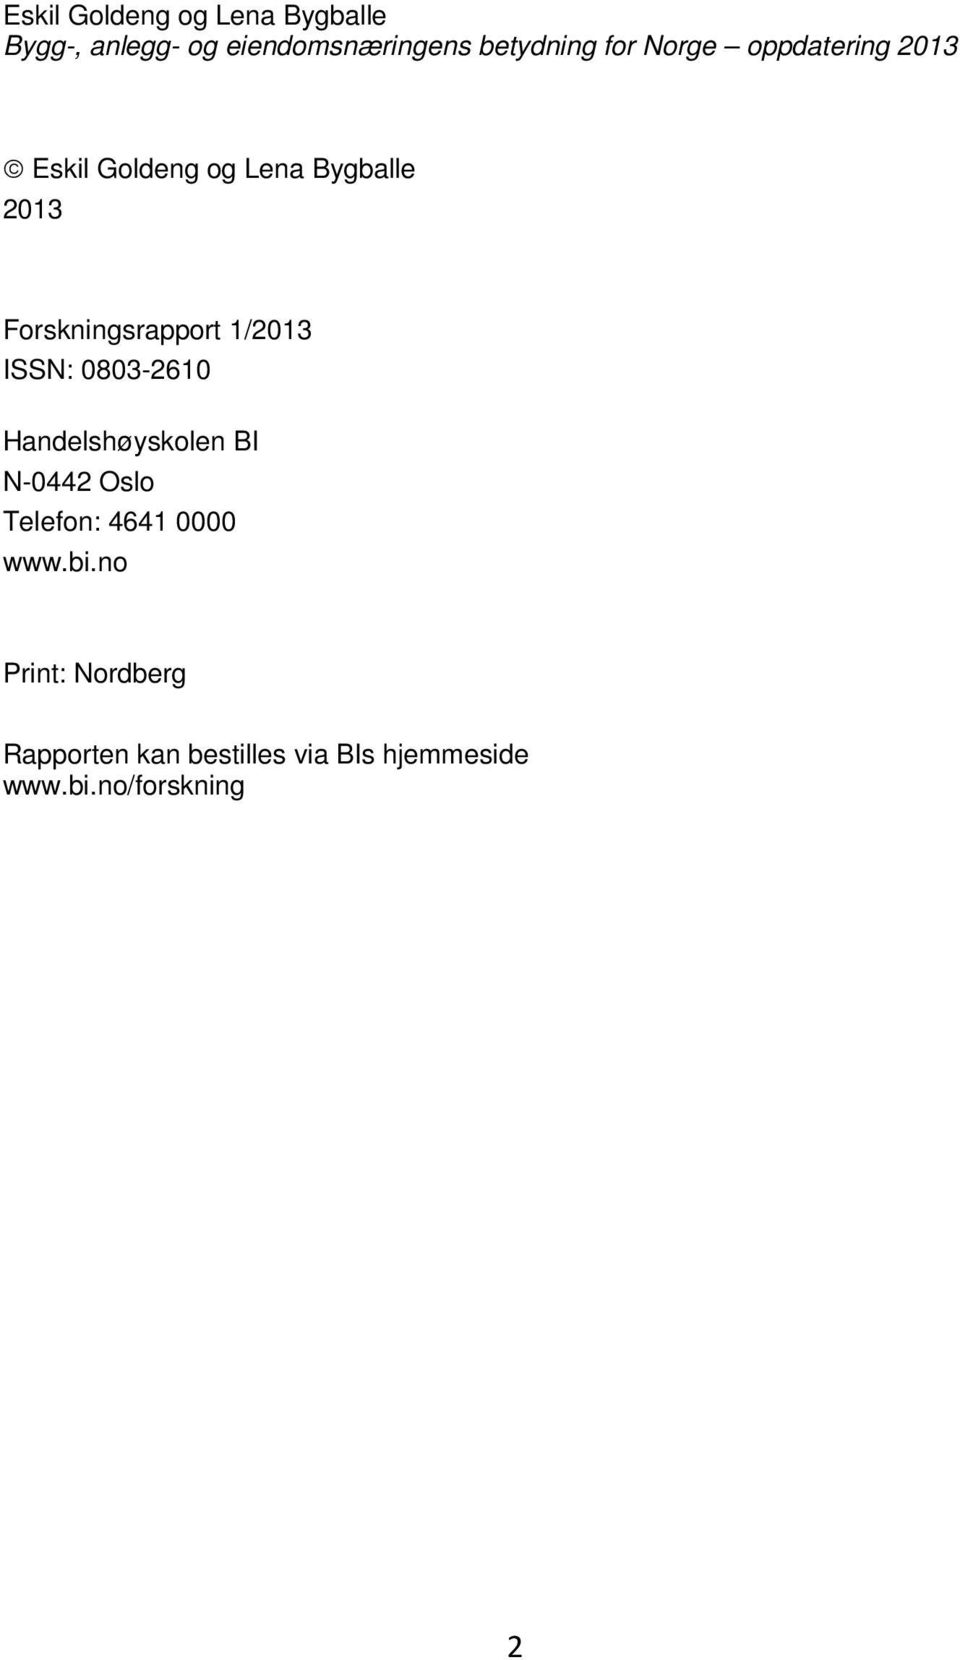 1/2013 ISSN: 0803-2610 Handelshøyskolen BI N-0442 Oslo Telefon: 4641 0000 www.bi.